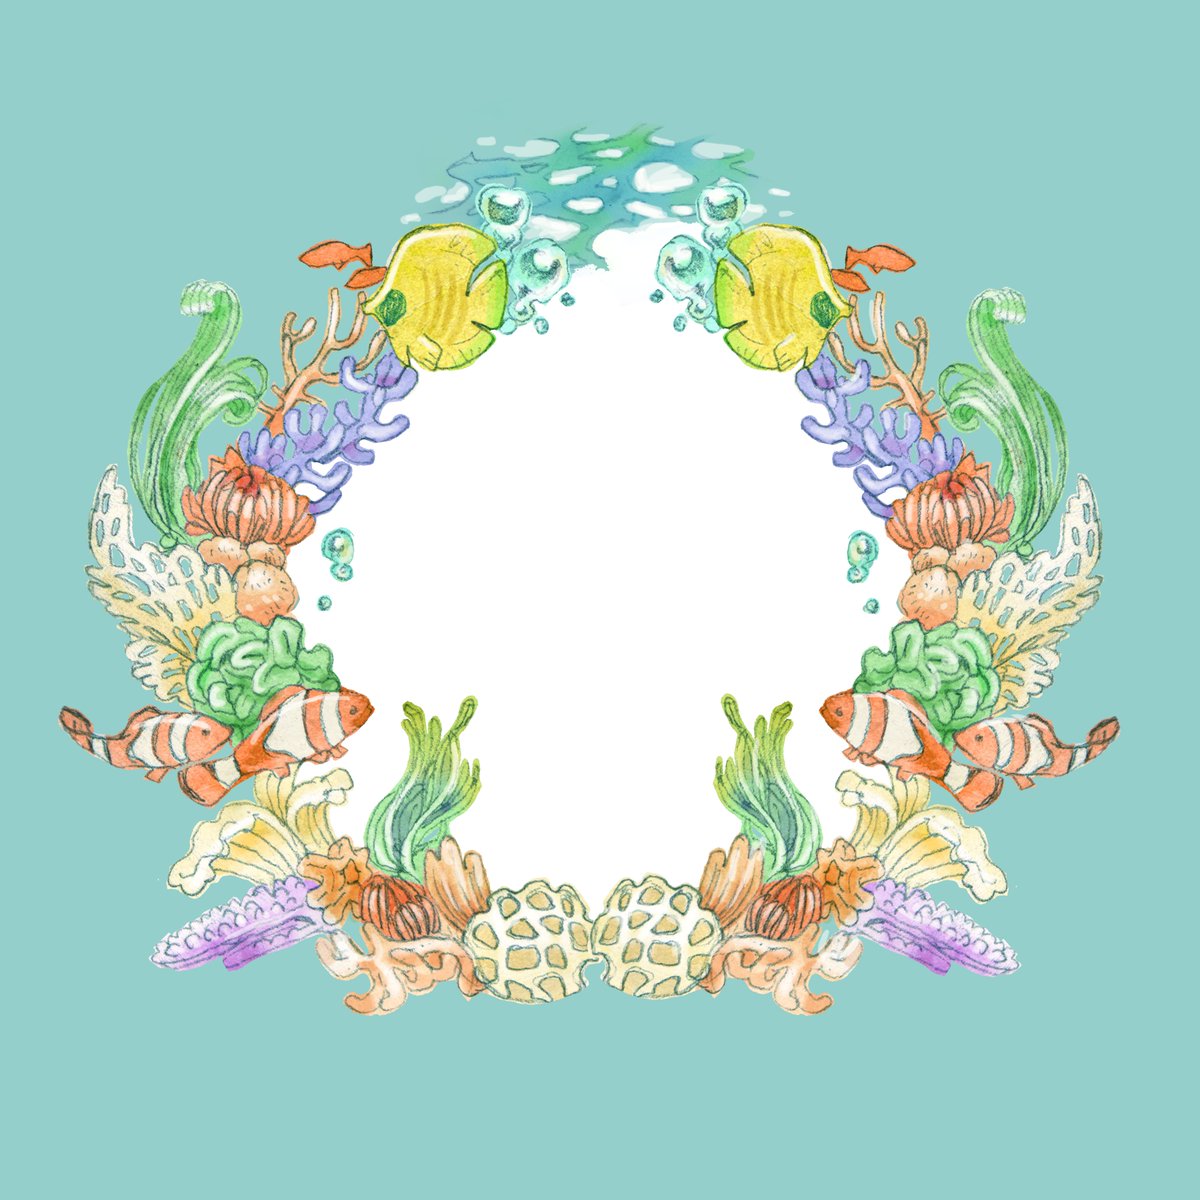 「南の海の飾り罫 」|渡邊 春菜のイラスト